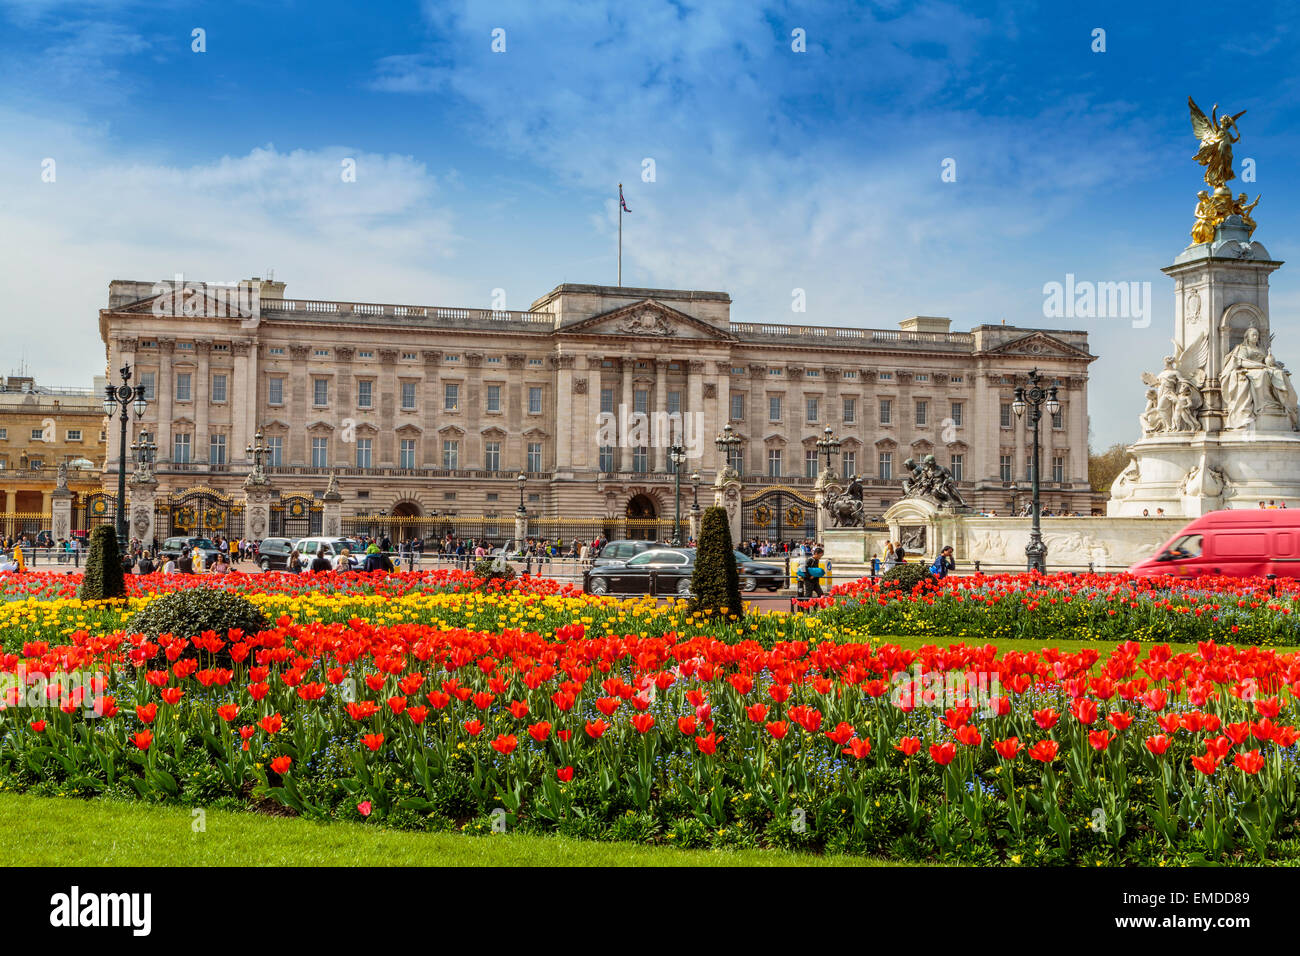 Una vista horizontal del Palacio de Buckingham, en el tiempo de primavera la ciudad de Westminster, Londres, Gran Bretaña. Foto de stock